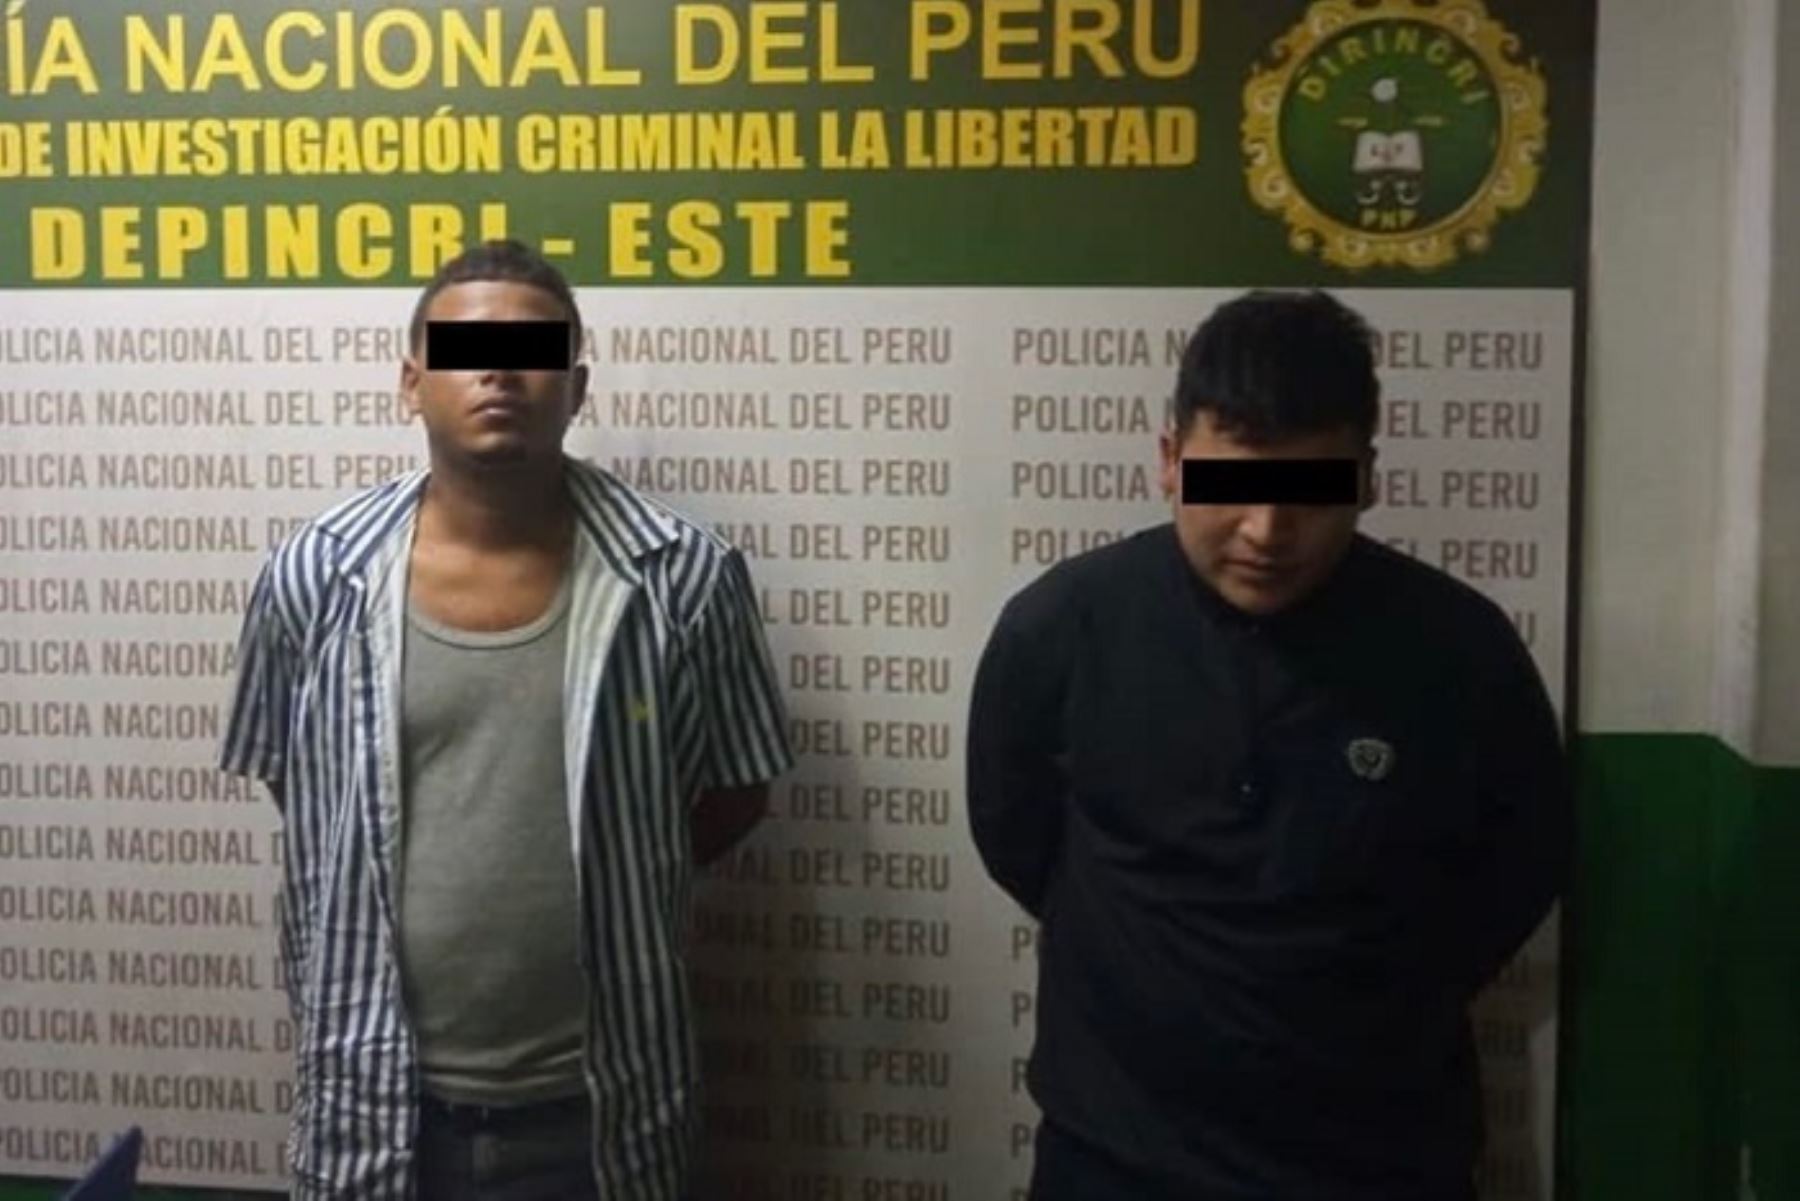 La víctima mortal fue identificada como Adviento Condori Cahuapoma.